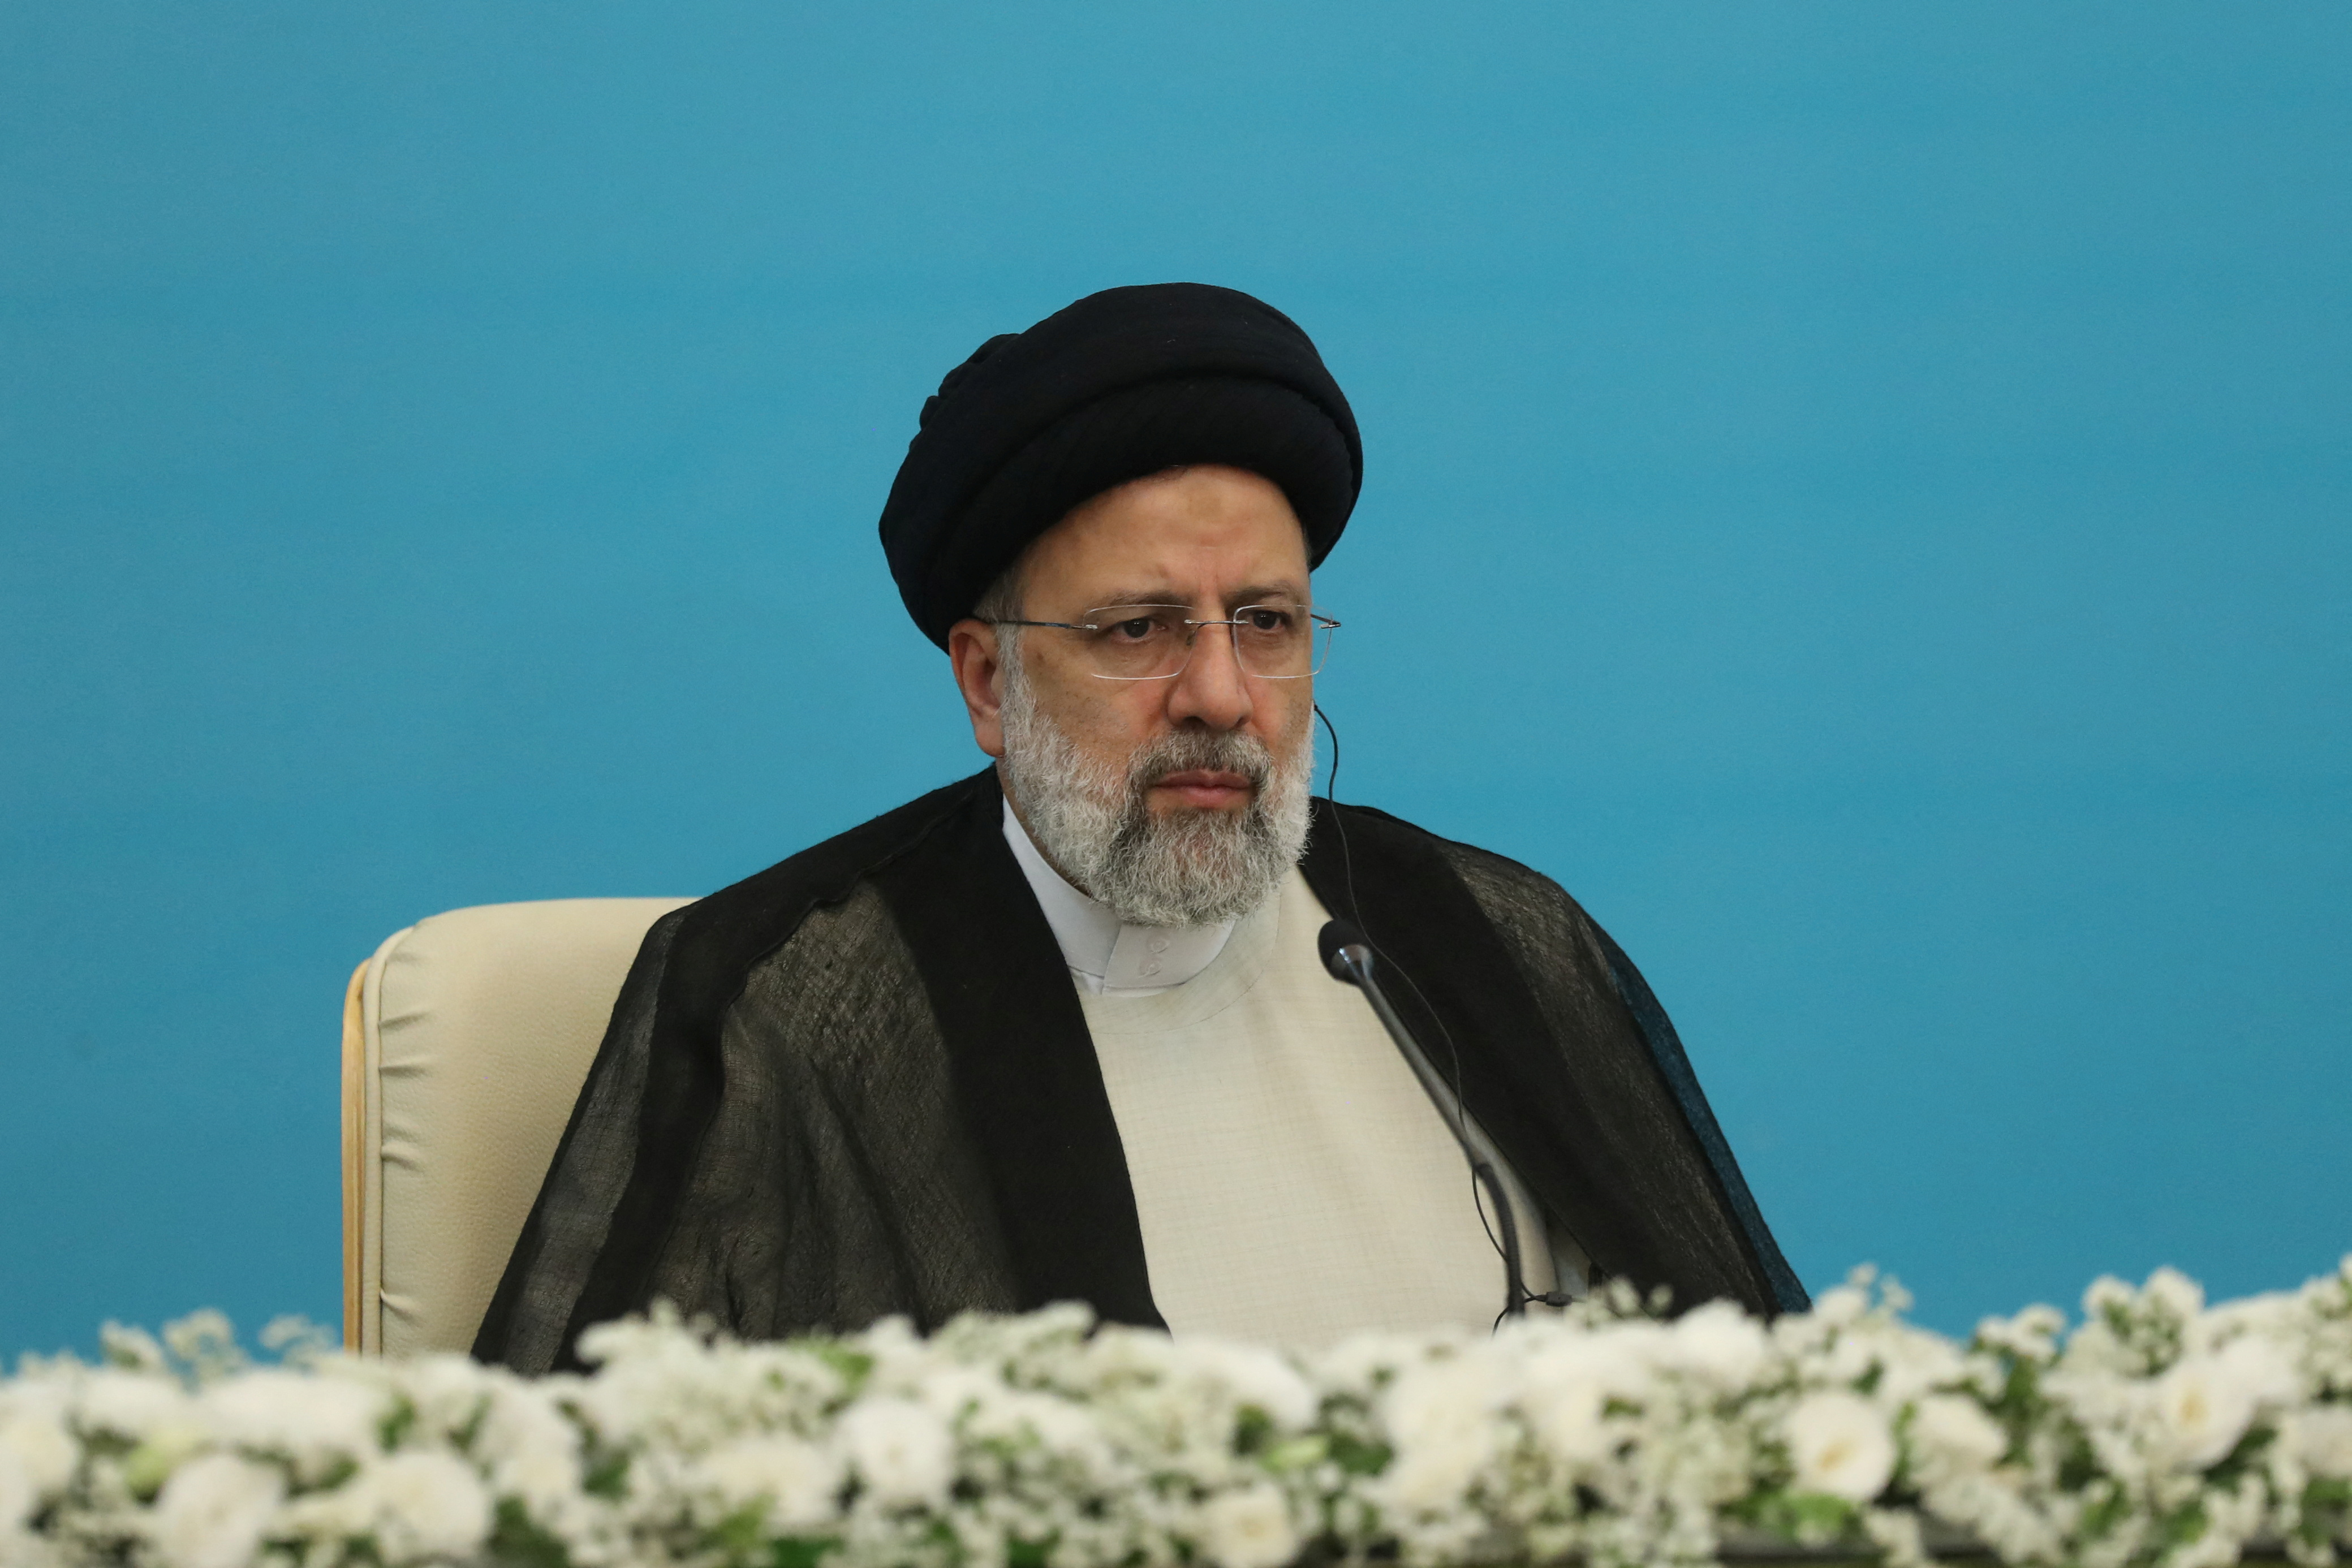 El presidente iraní Ebrahim Raisi asiste a una conferencia de prensa tras la cumbre del Proceso de Astaná en Teherán, Irán, el 19 de julio de 2022. Majid Asgaripour/WANA (Agencia de Noticias de Asia Occidental)/Handout vía REUTERS